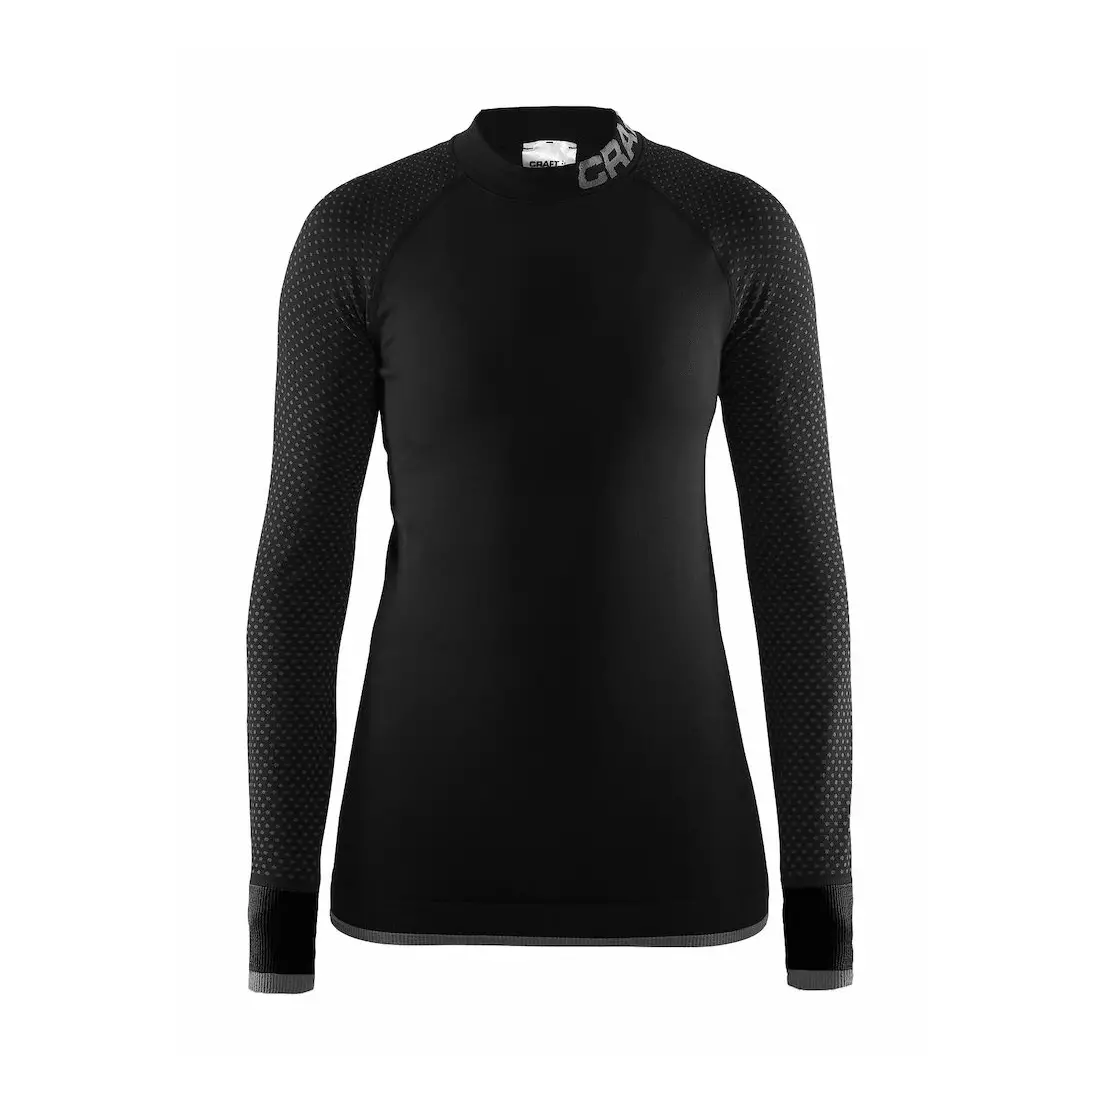 CRAFT WARM INTENSITY Damenunterwäsche, schwarzes T-Shirt, 1905347-999985